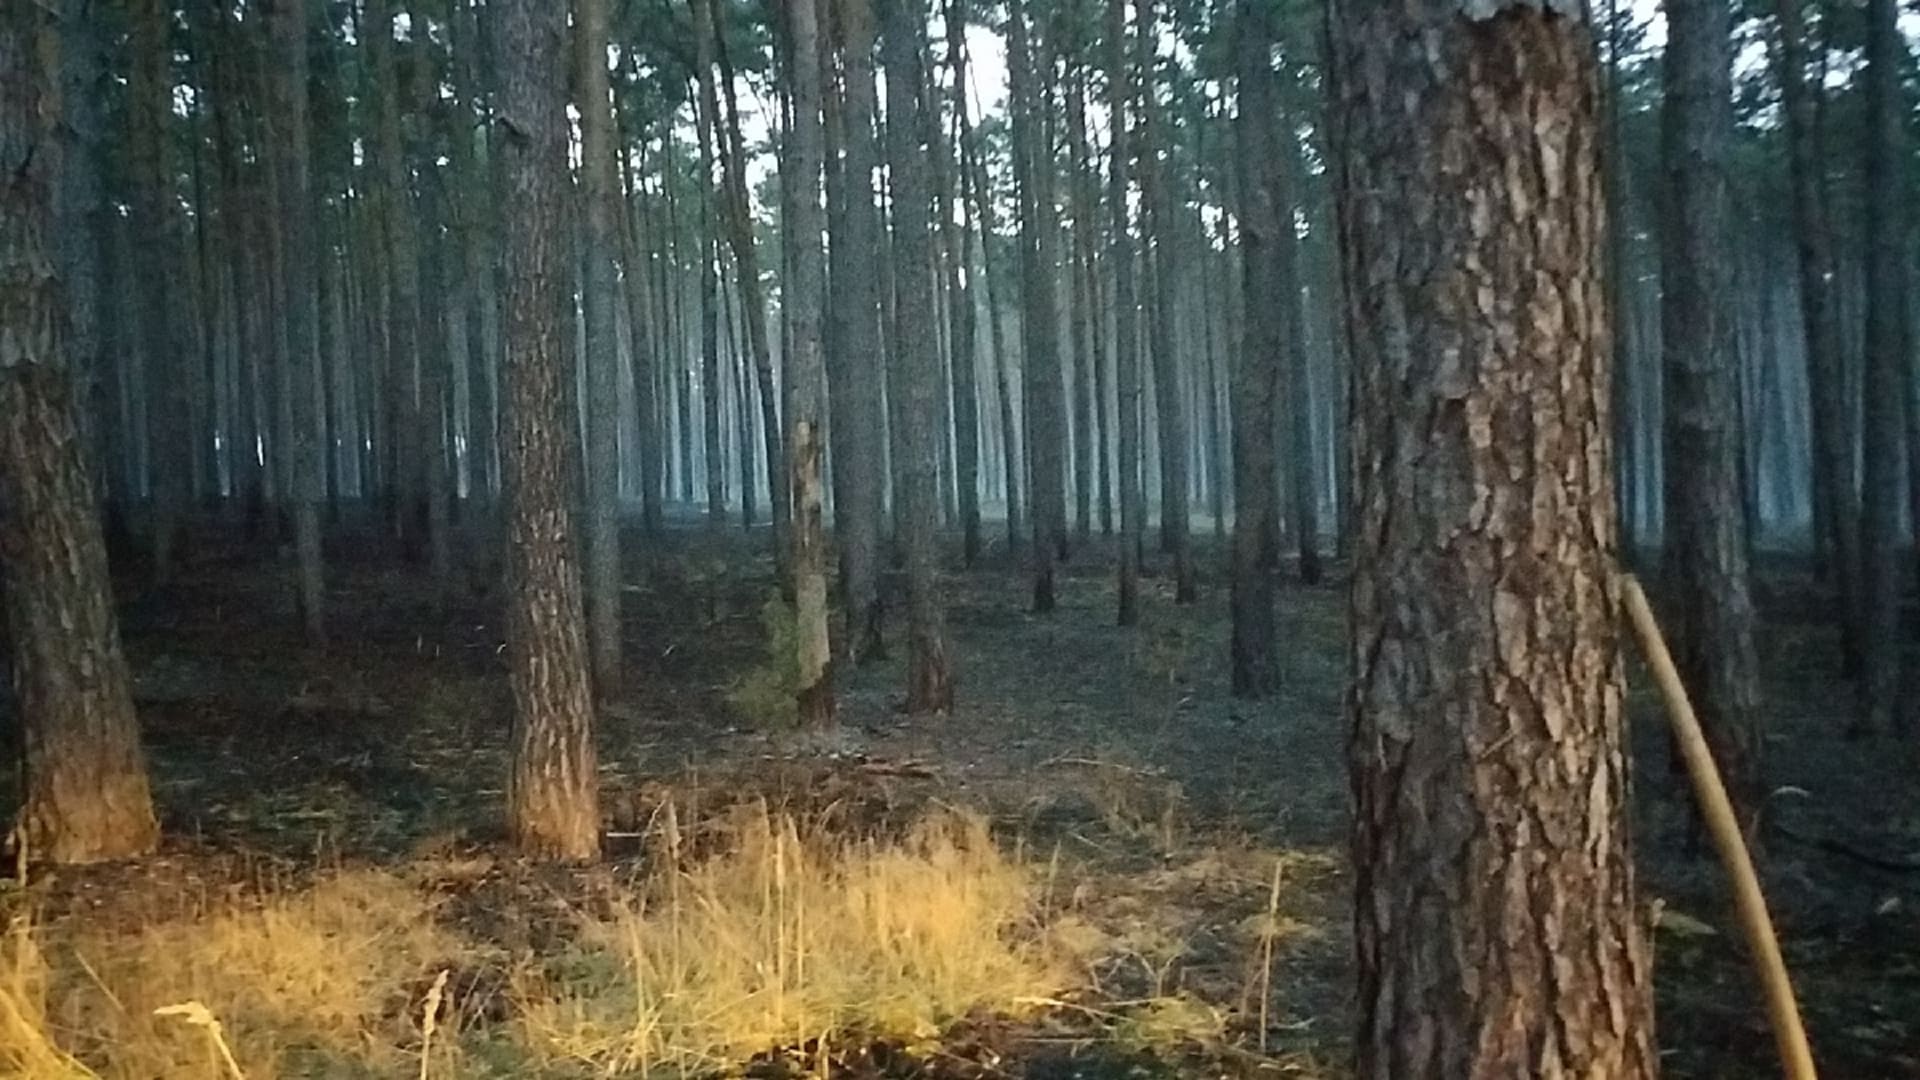 Hasiči likvidovali v noci z úterý na středu požár lesa u Bzence na Hodonínsku, který zkomplikoval vítr.